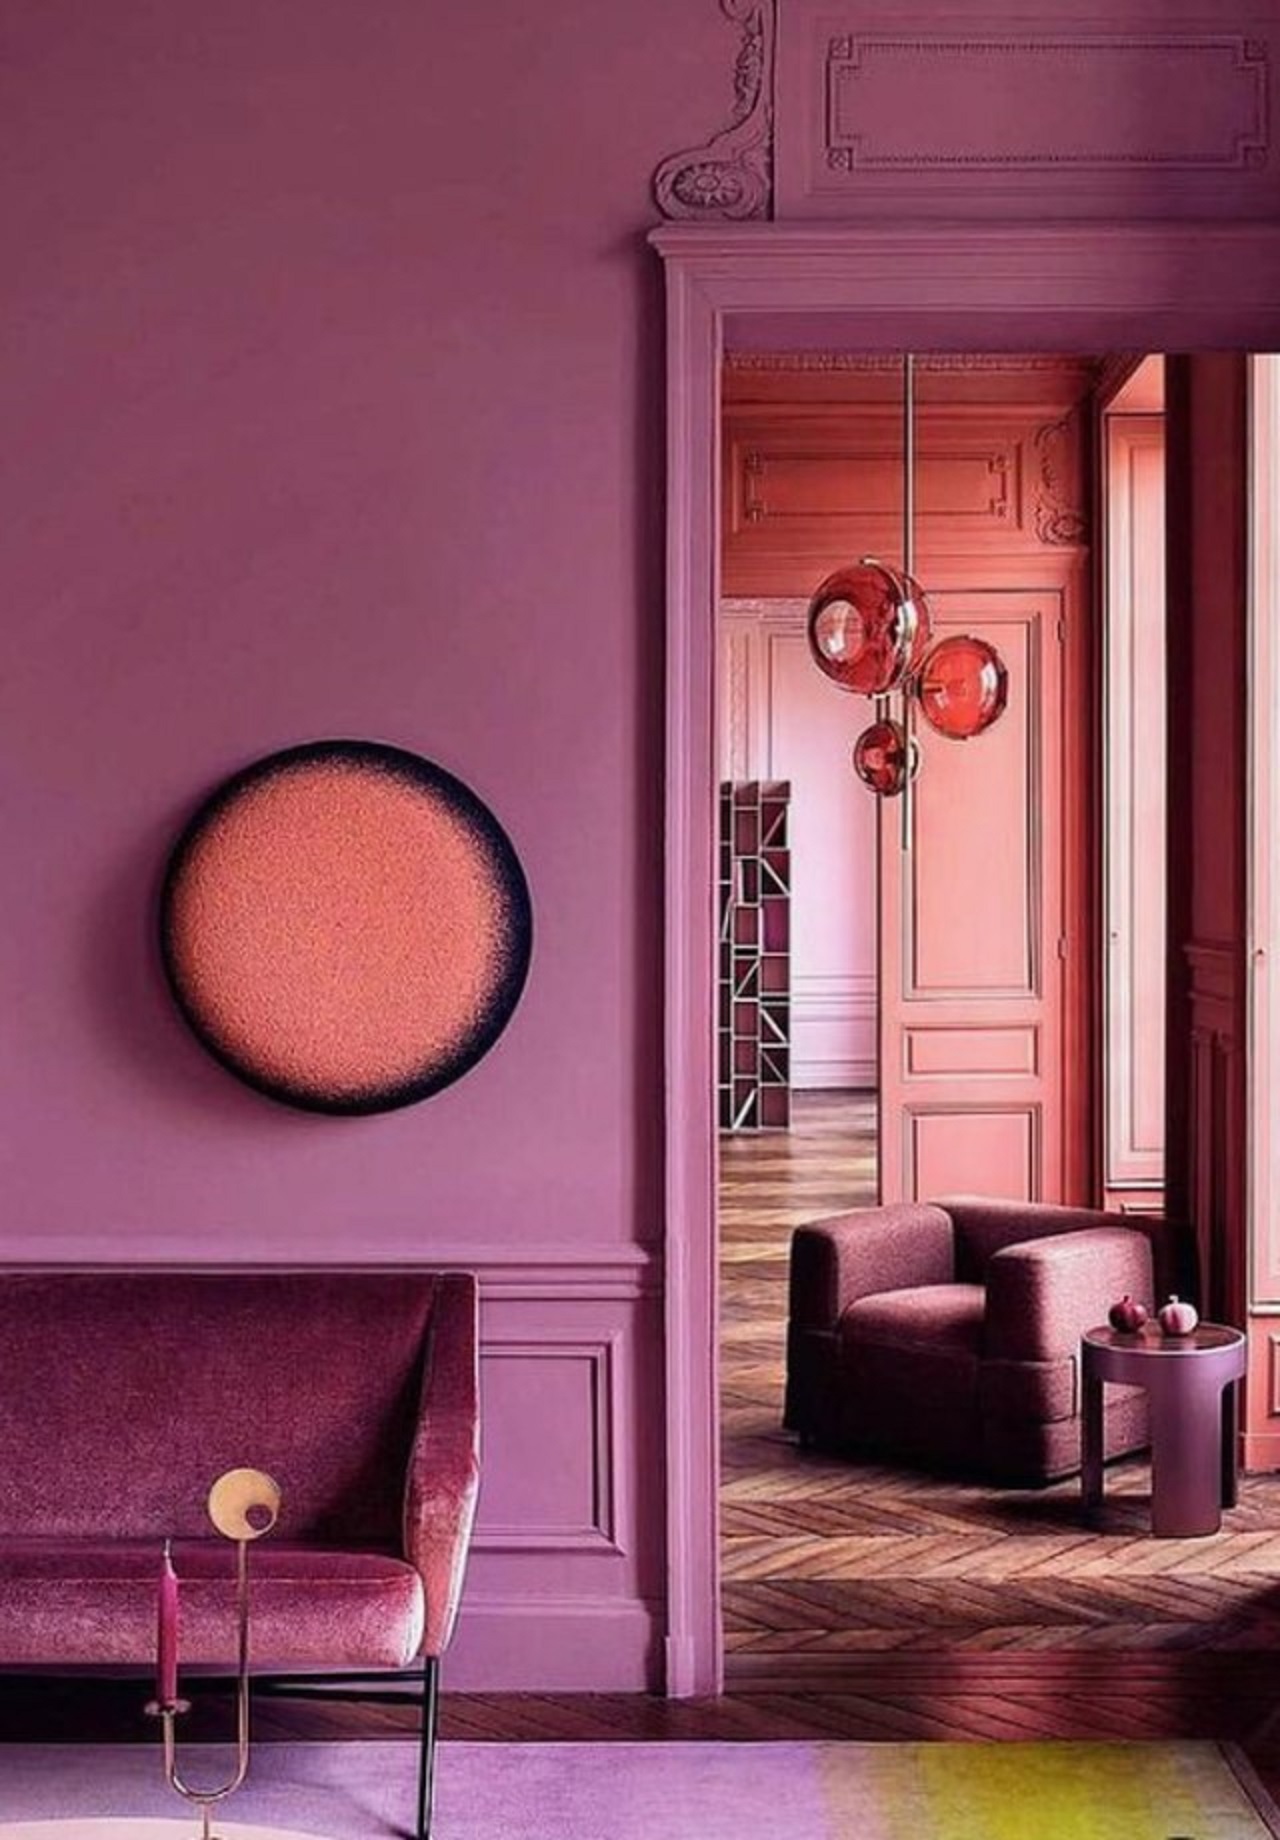 Góc phòng khách tràn ngập màu tím ấm áp và tinh tế, pha trộn cùng màu cam san hô nhẹ nhàng.Phòng tắm màu hồng cá hồi với các kệ và cửa sổ tích hợp để làm nổi bật không gian với ánh sáng tự nhiên.